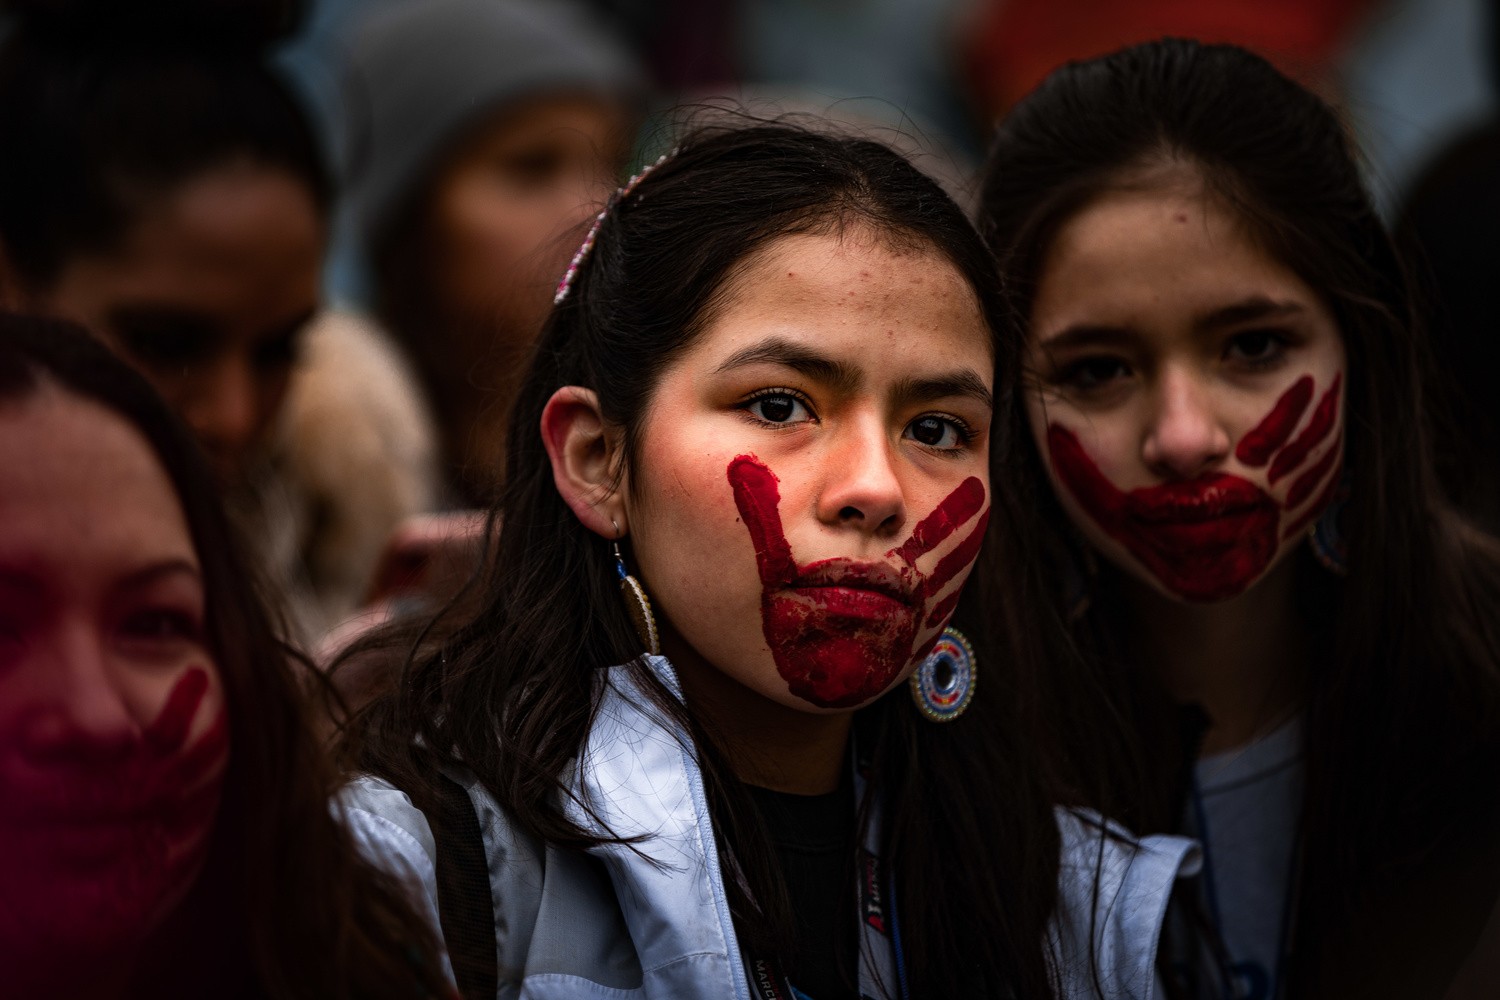 Гран-при, 2020. Девушки народности Пискатауэй на Женском марше, чтобы повысить осведомлённость о насилии в отношении коренных американцев. Вашингтон, округ Колумбия, 18 января 2020 года. Автор Скайлер Уилсон